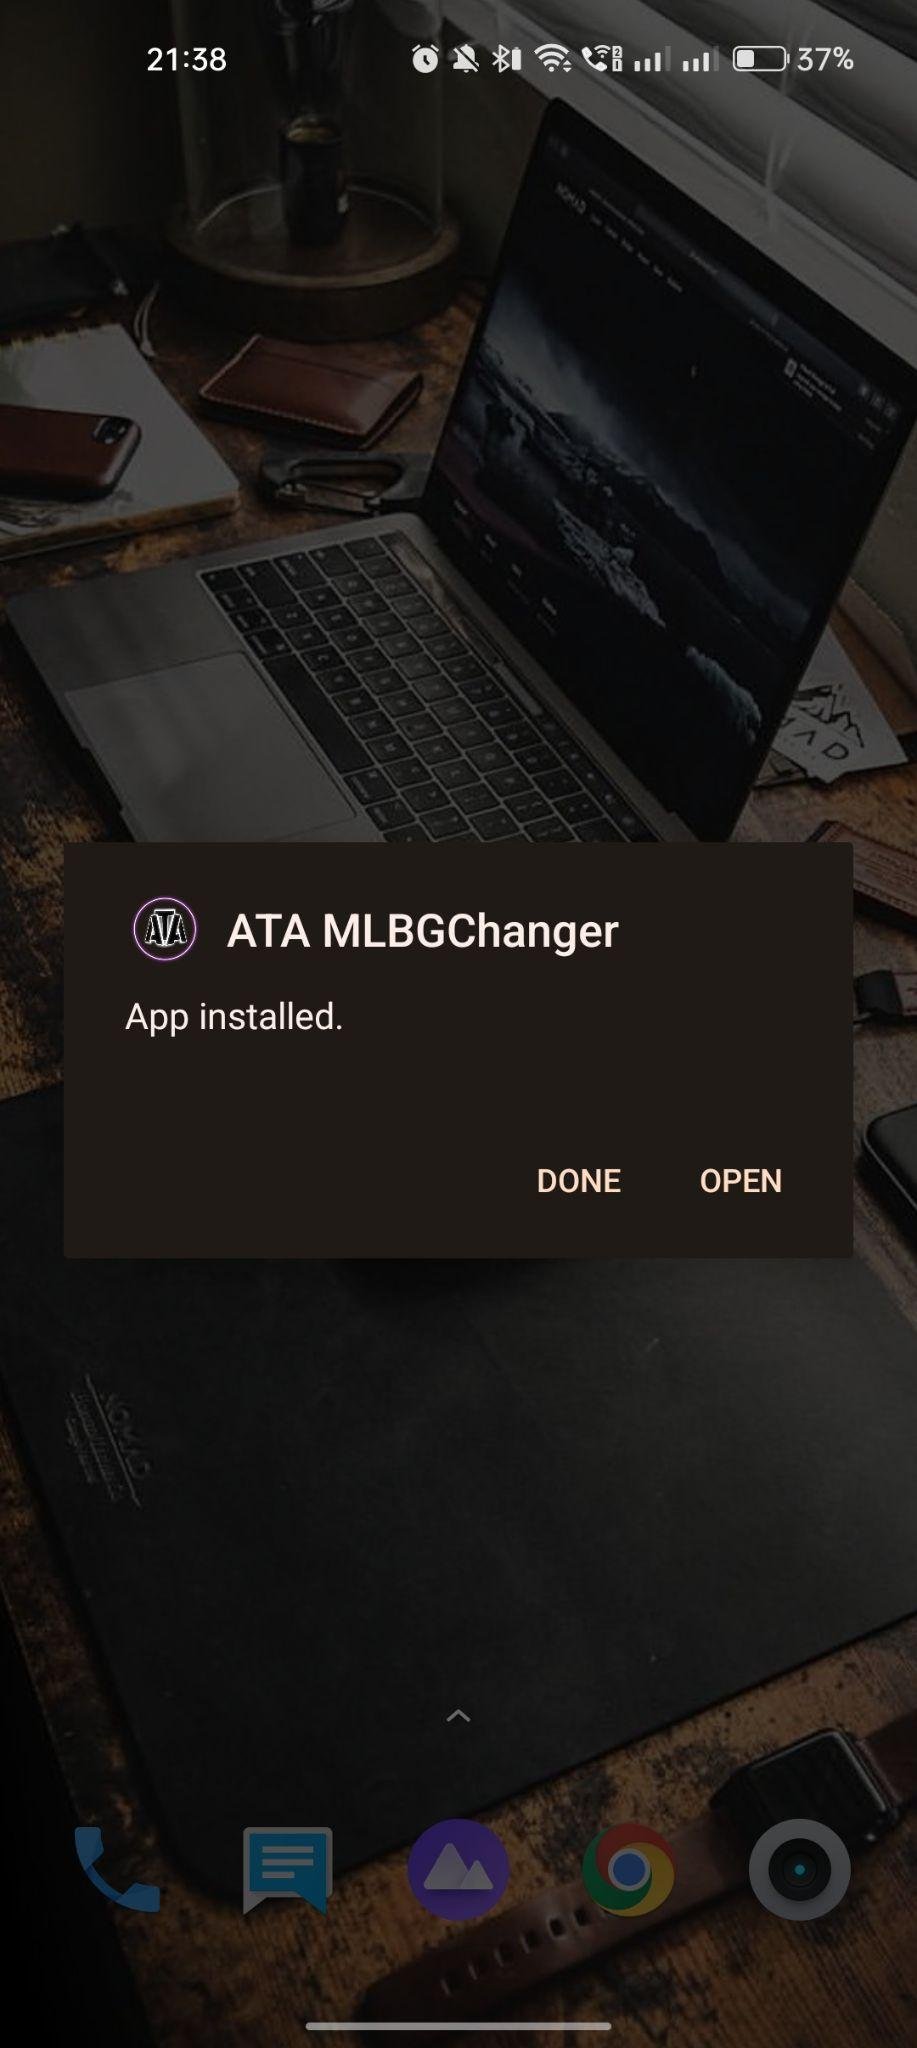 ATA MLBG Changer apk installed